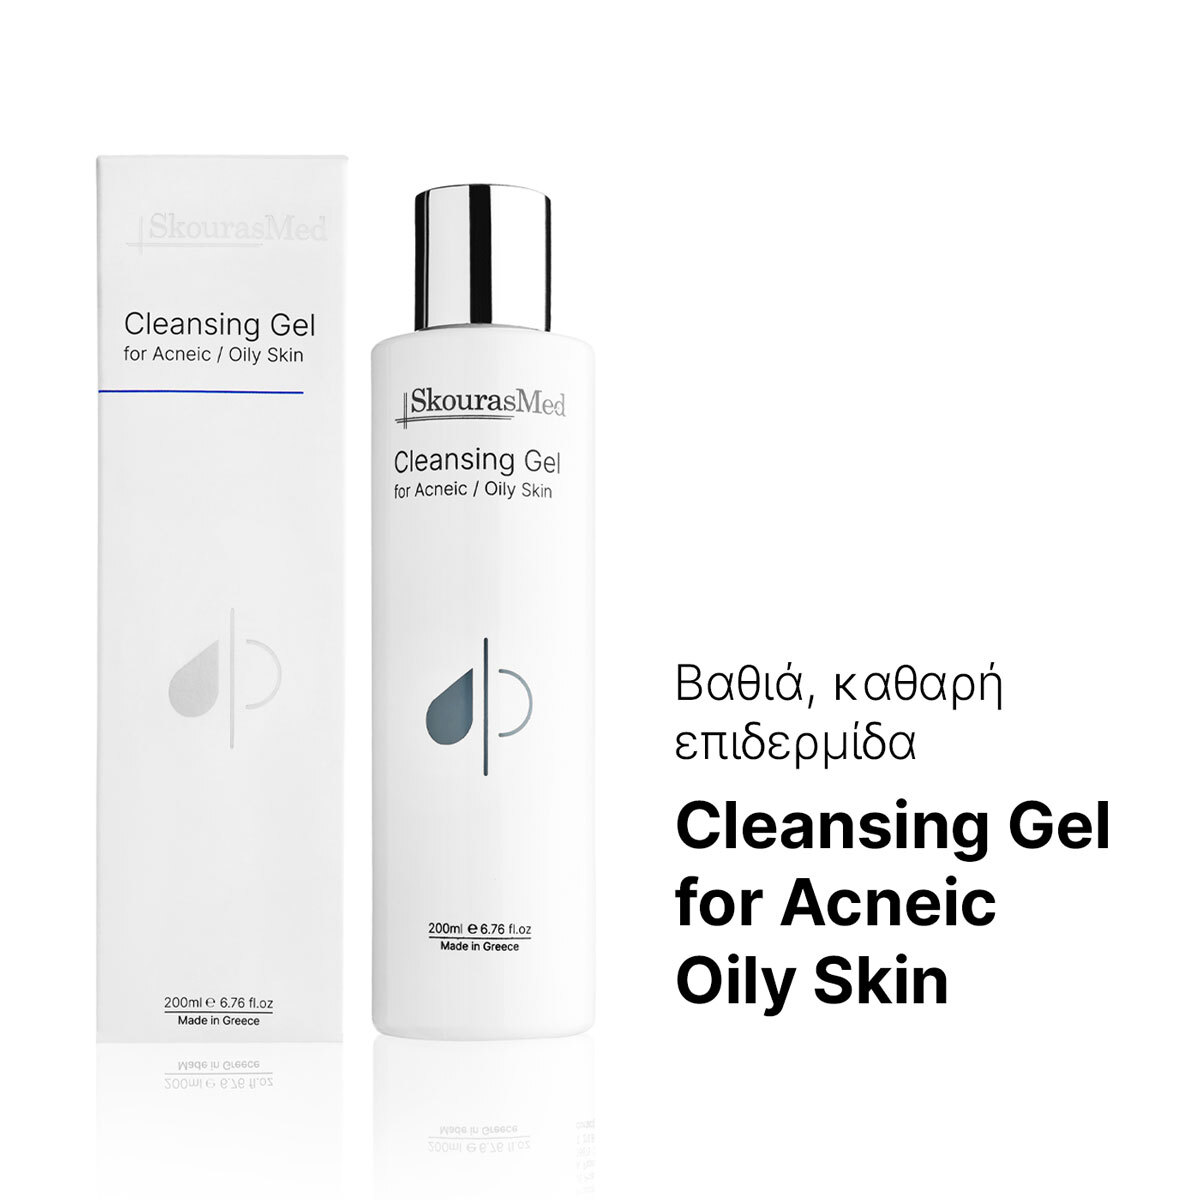 SkourasMed Cleansing Gel for Acneic/Oily Skin